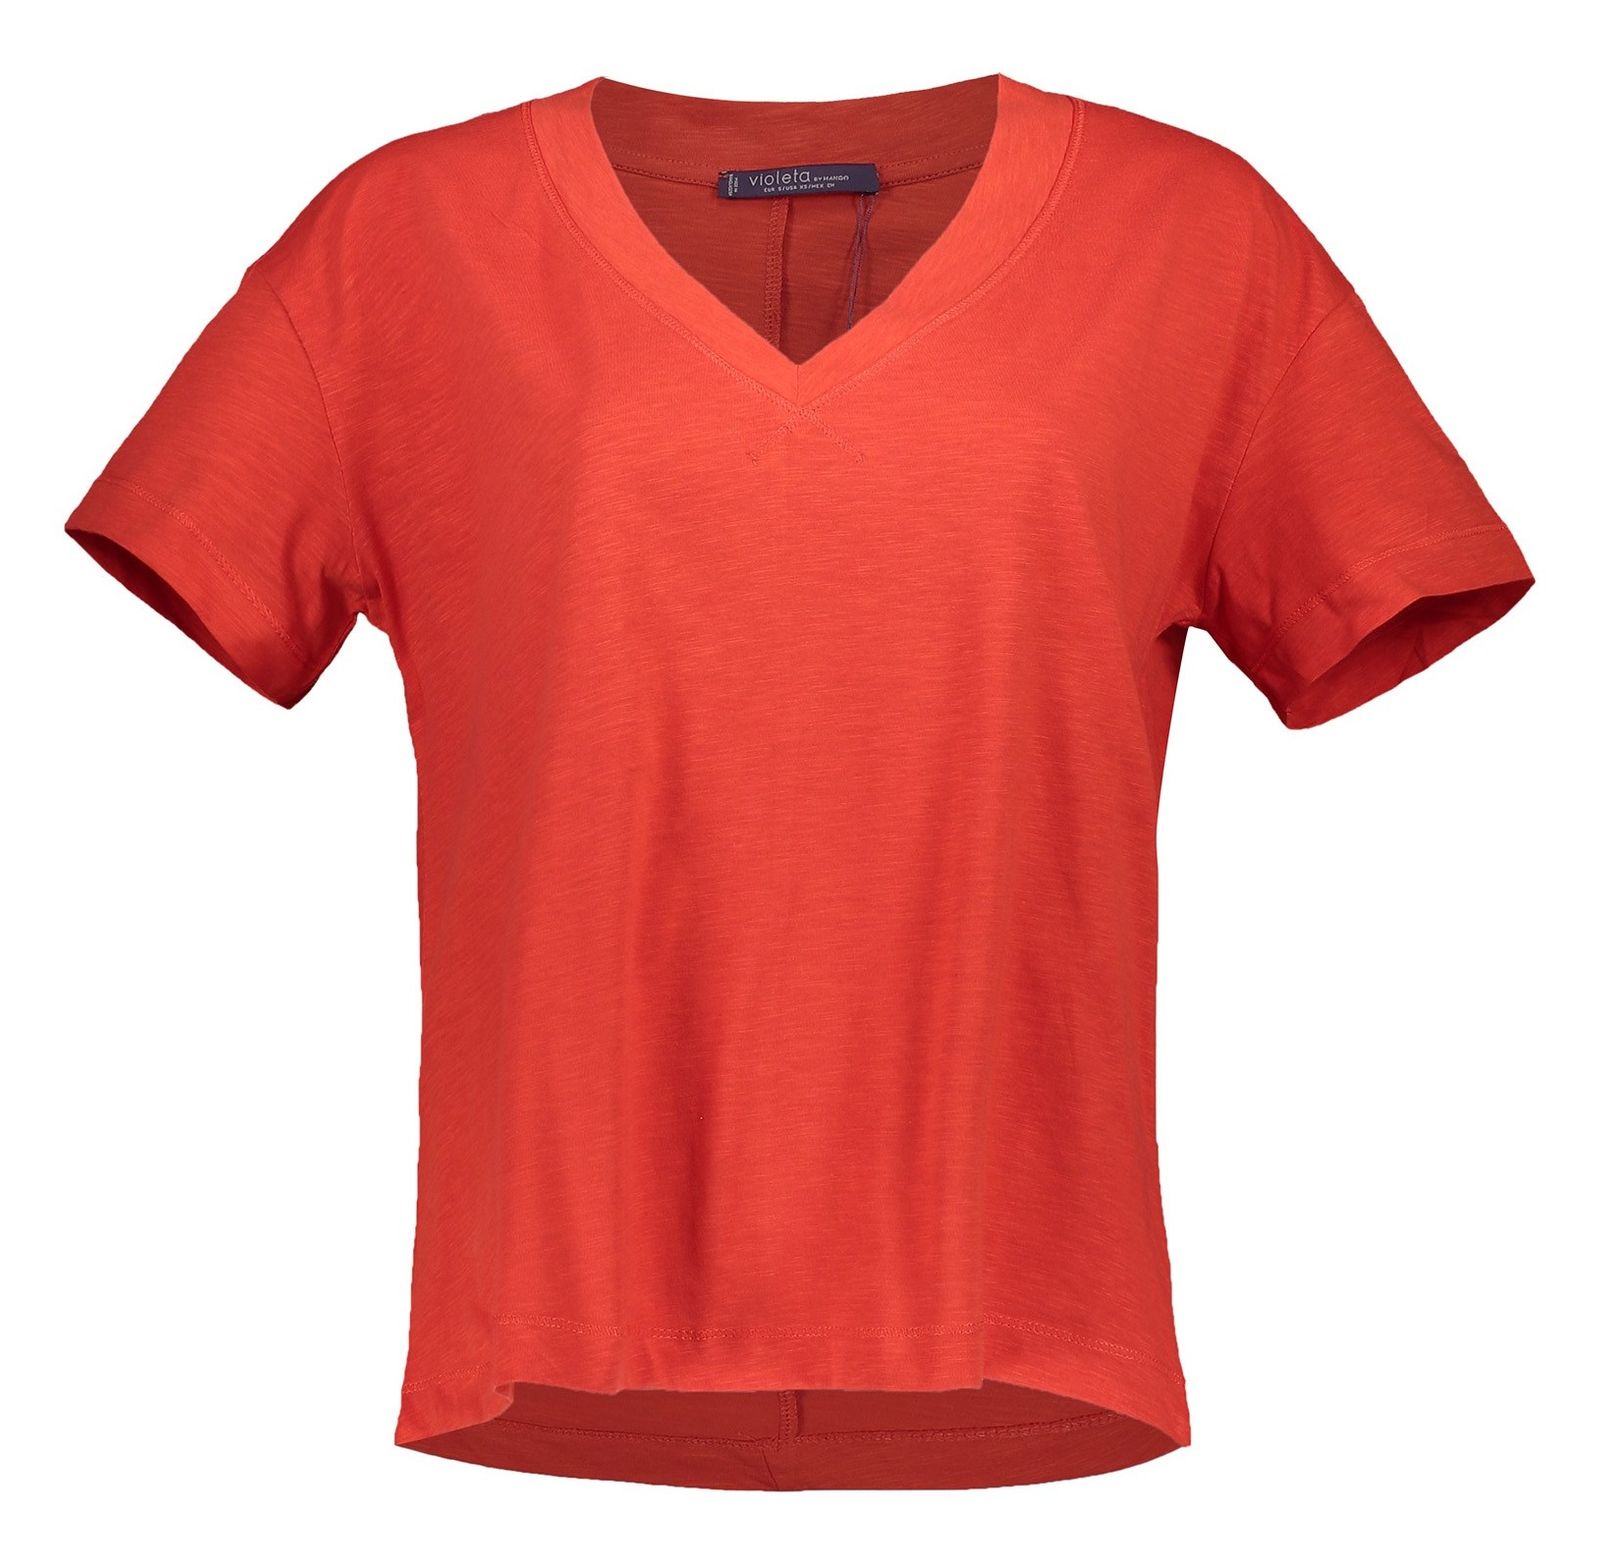 تی شرت نخی یقه هفت زنانه - ویولتا بای مانگو - قرمز - 2